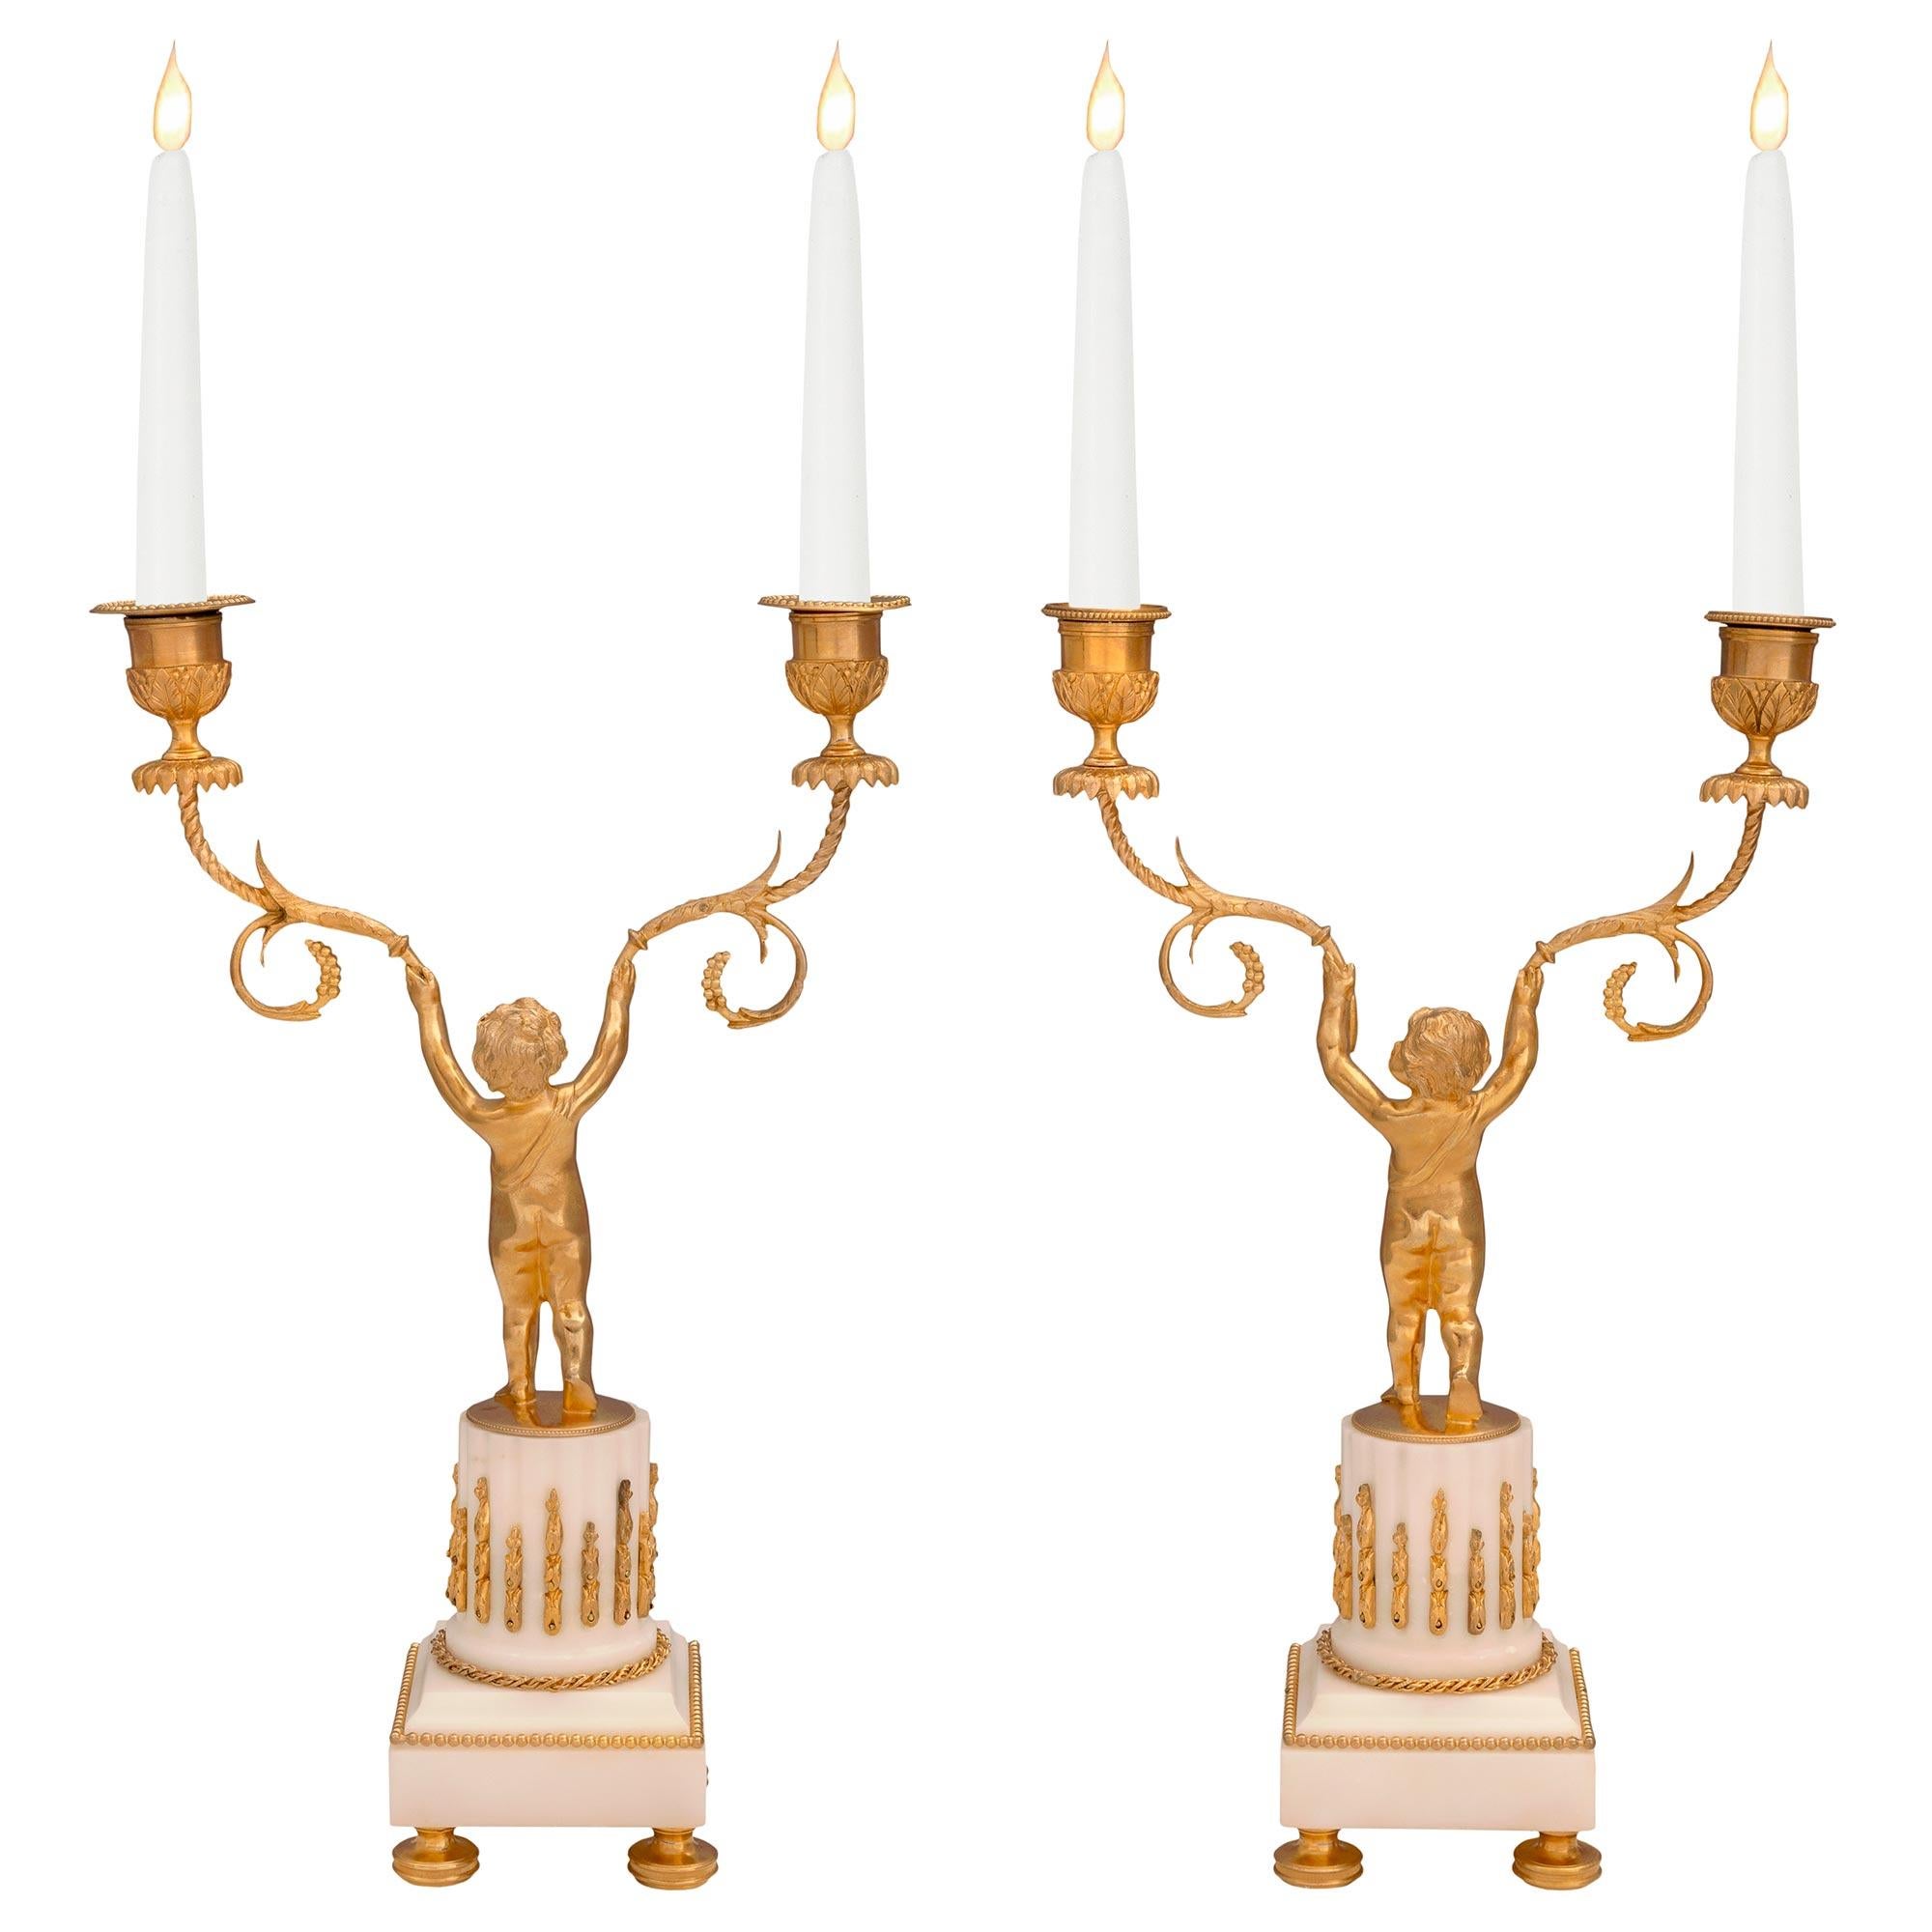 Une élégante paire de candélabres français du 19ème siècle en bronze doré et marbre blanc de Carrare. Chaque candélabre est surélevé par de fins pieds en forme de chignon tachetés sous la base carrée en marbre blanc de Carrare. Les bases présentent